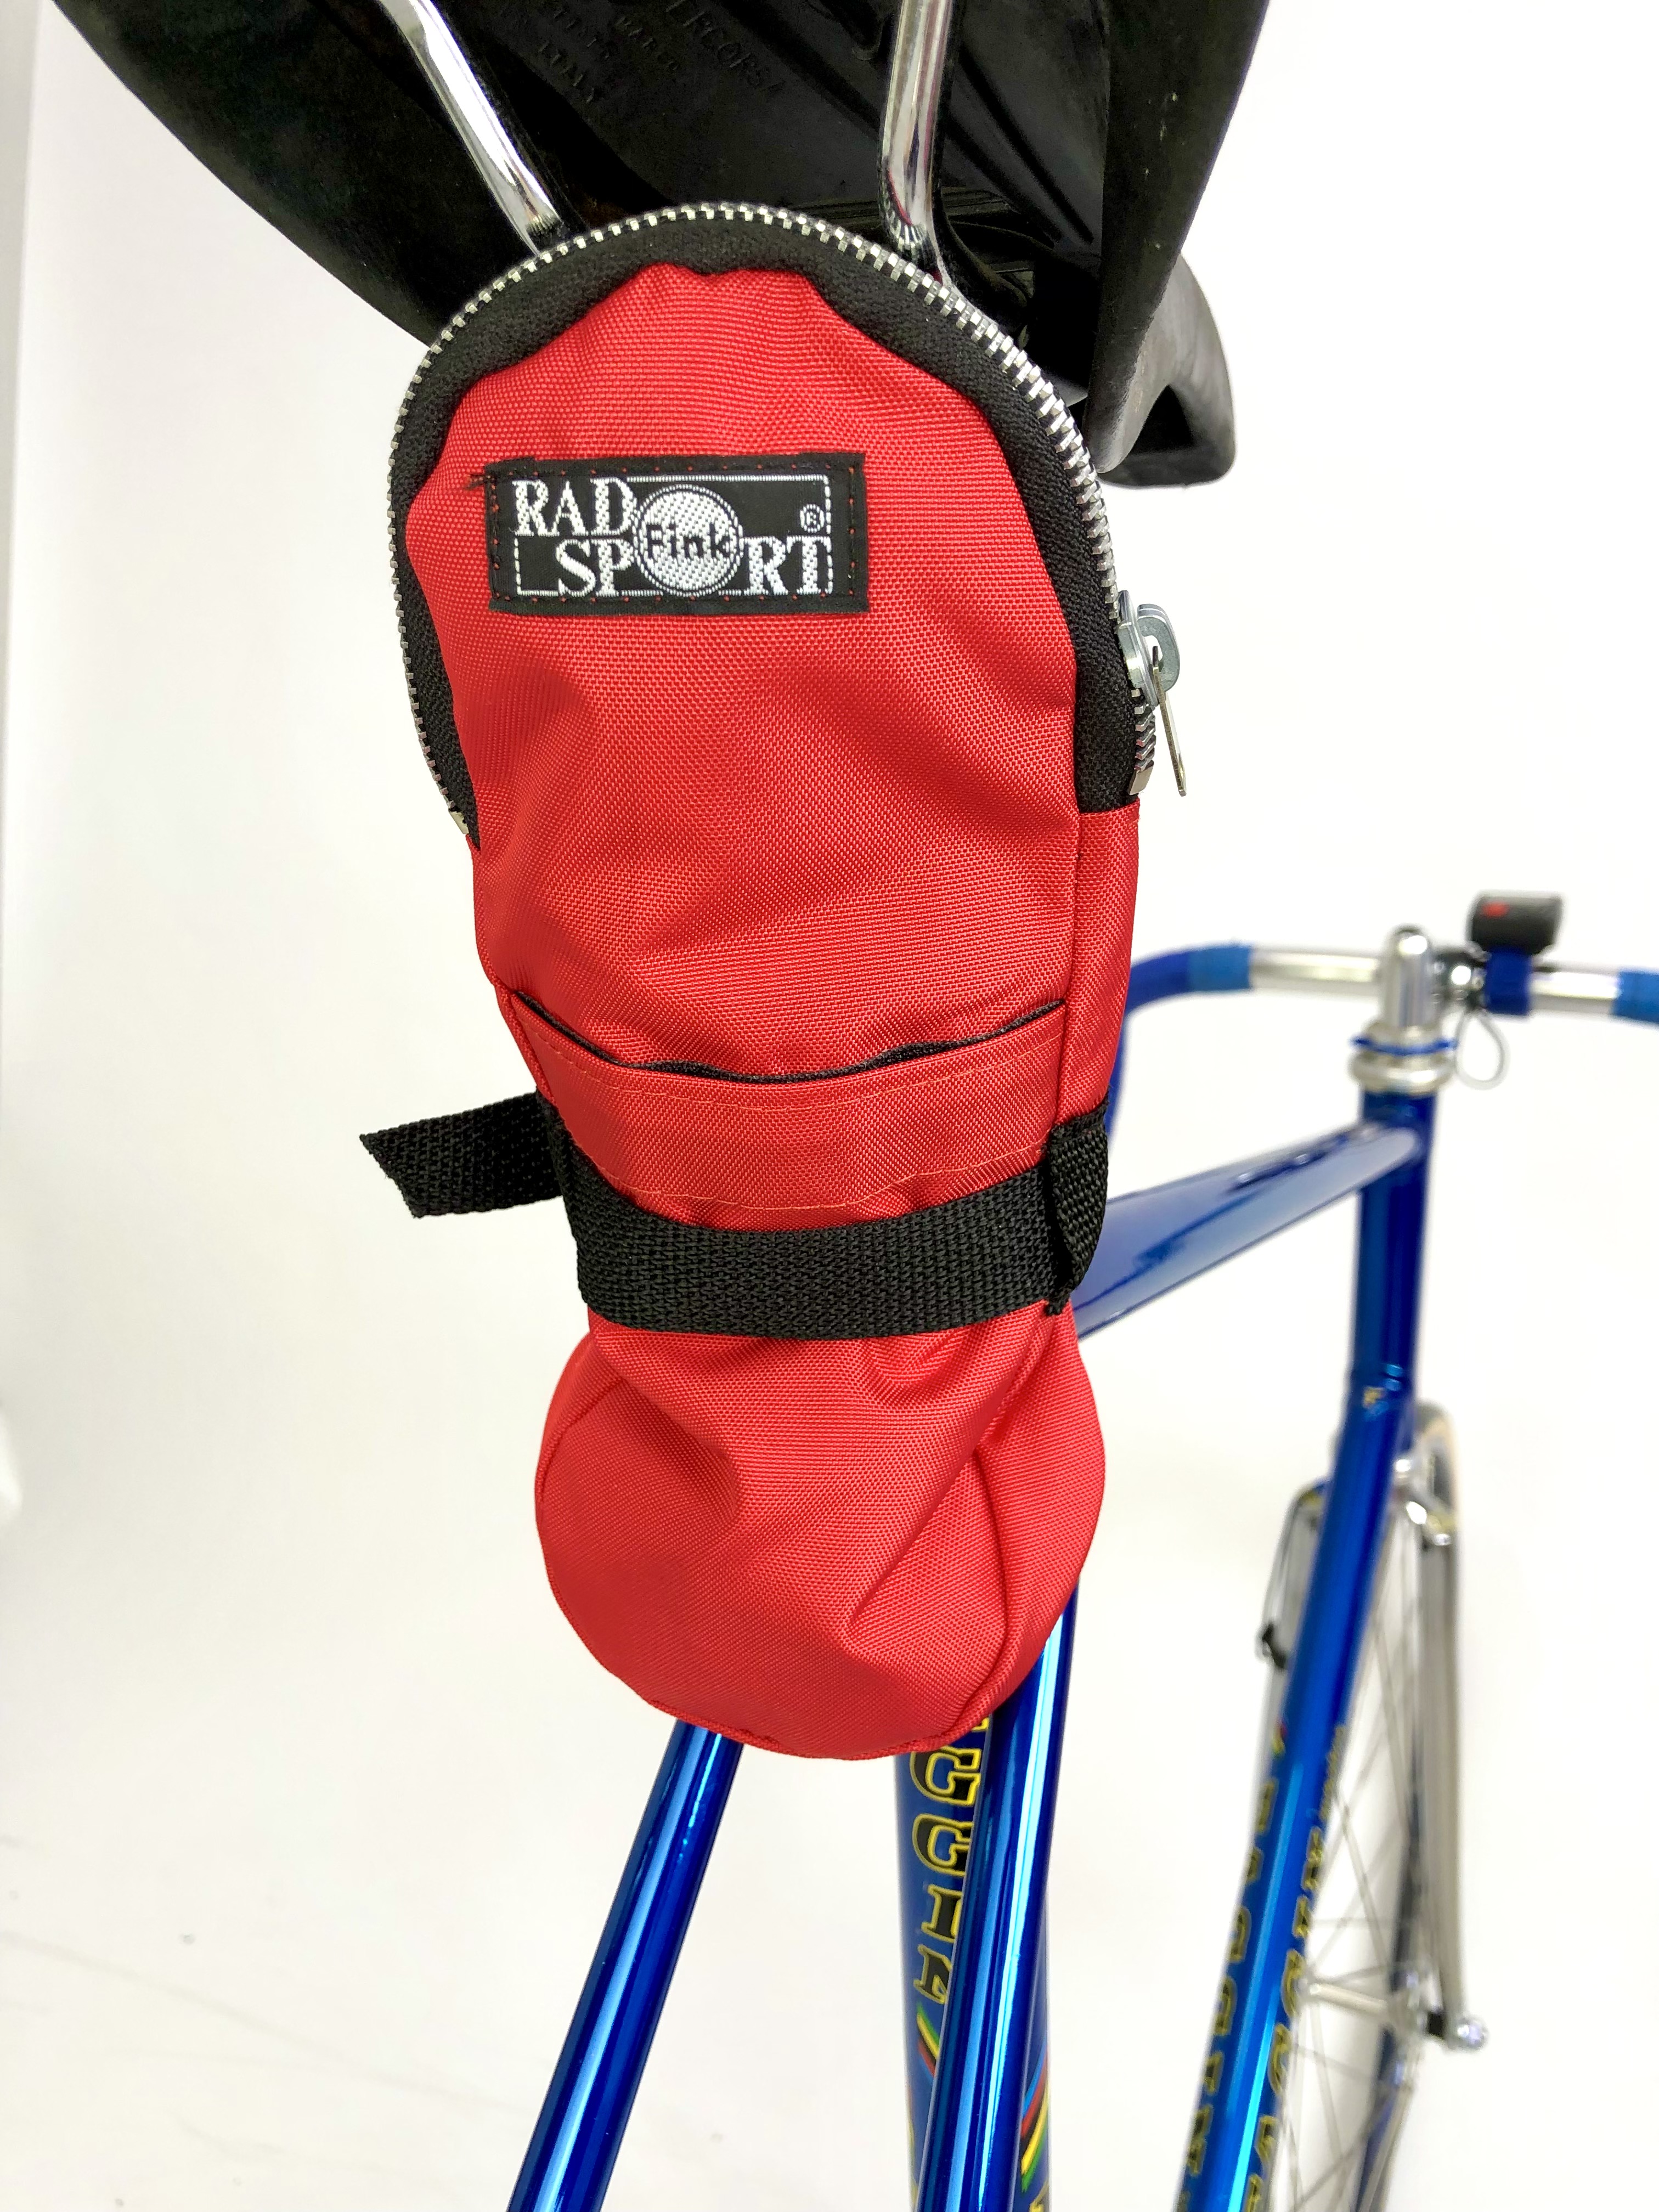 Saddlebag, Racing Bike, tire or tube bag, nylon red